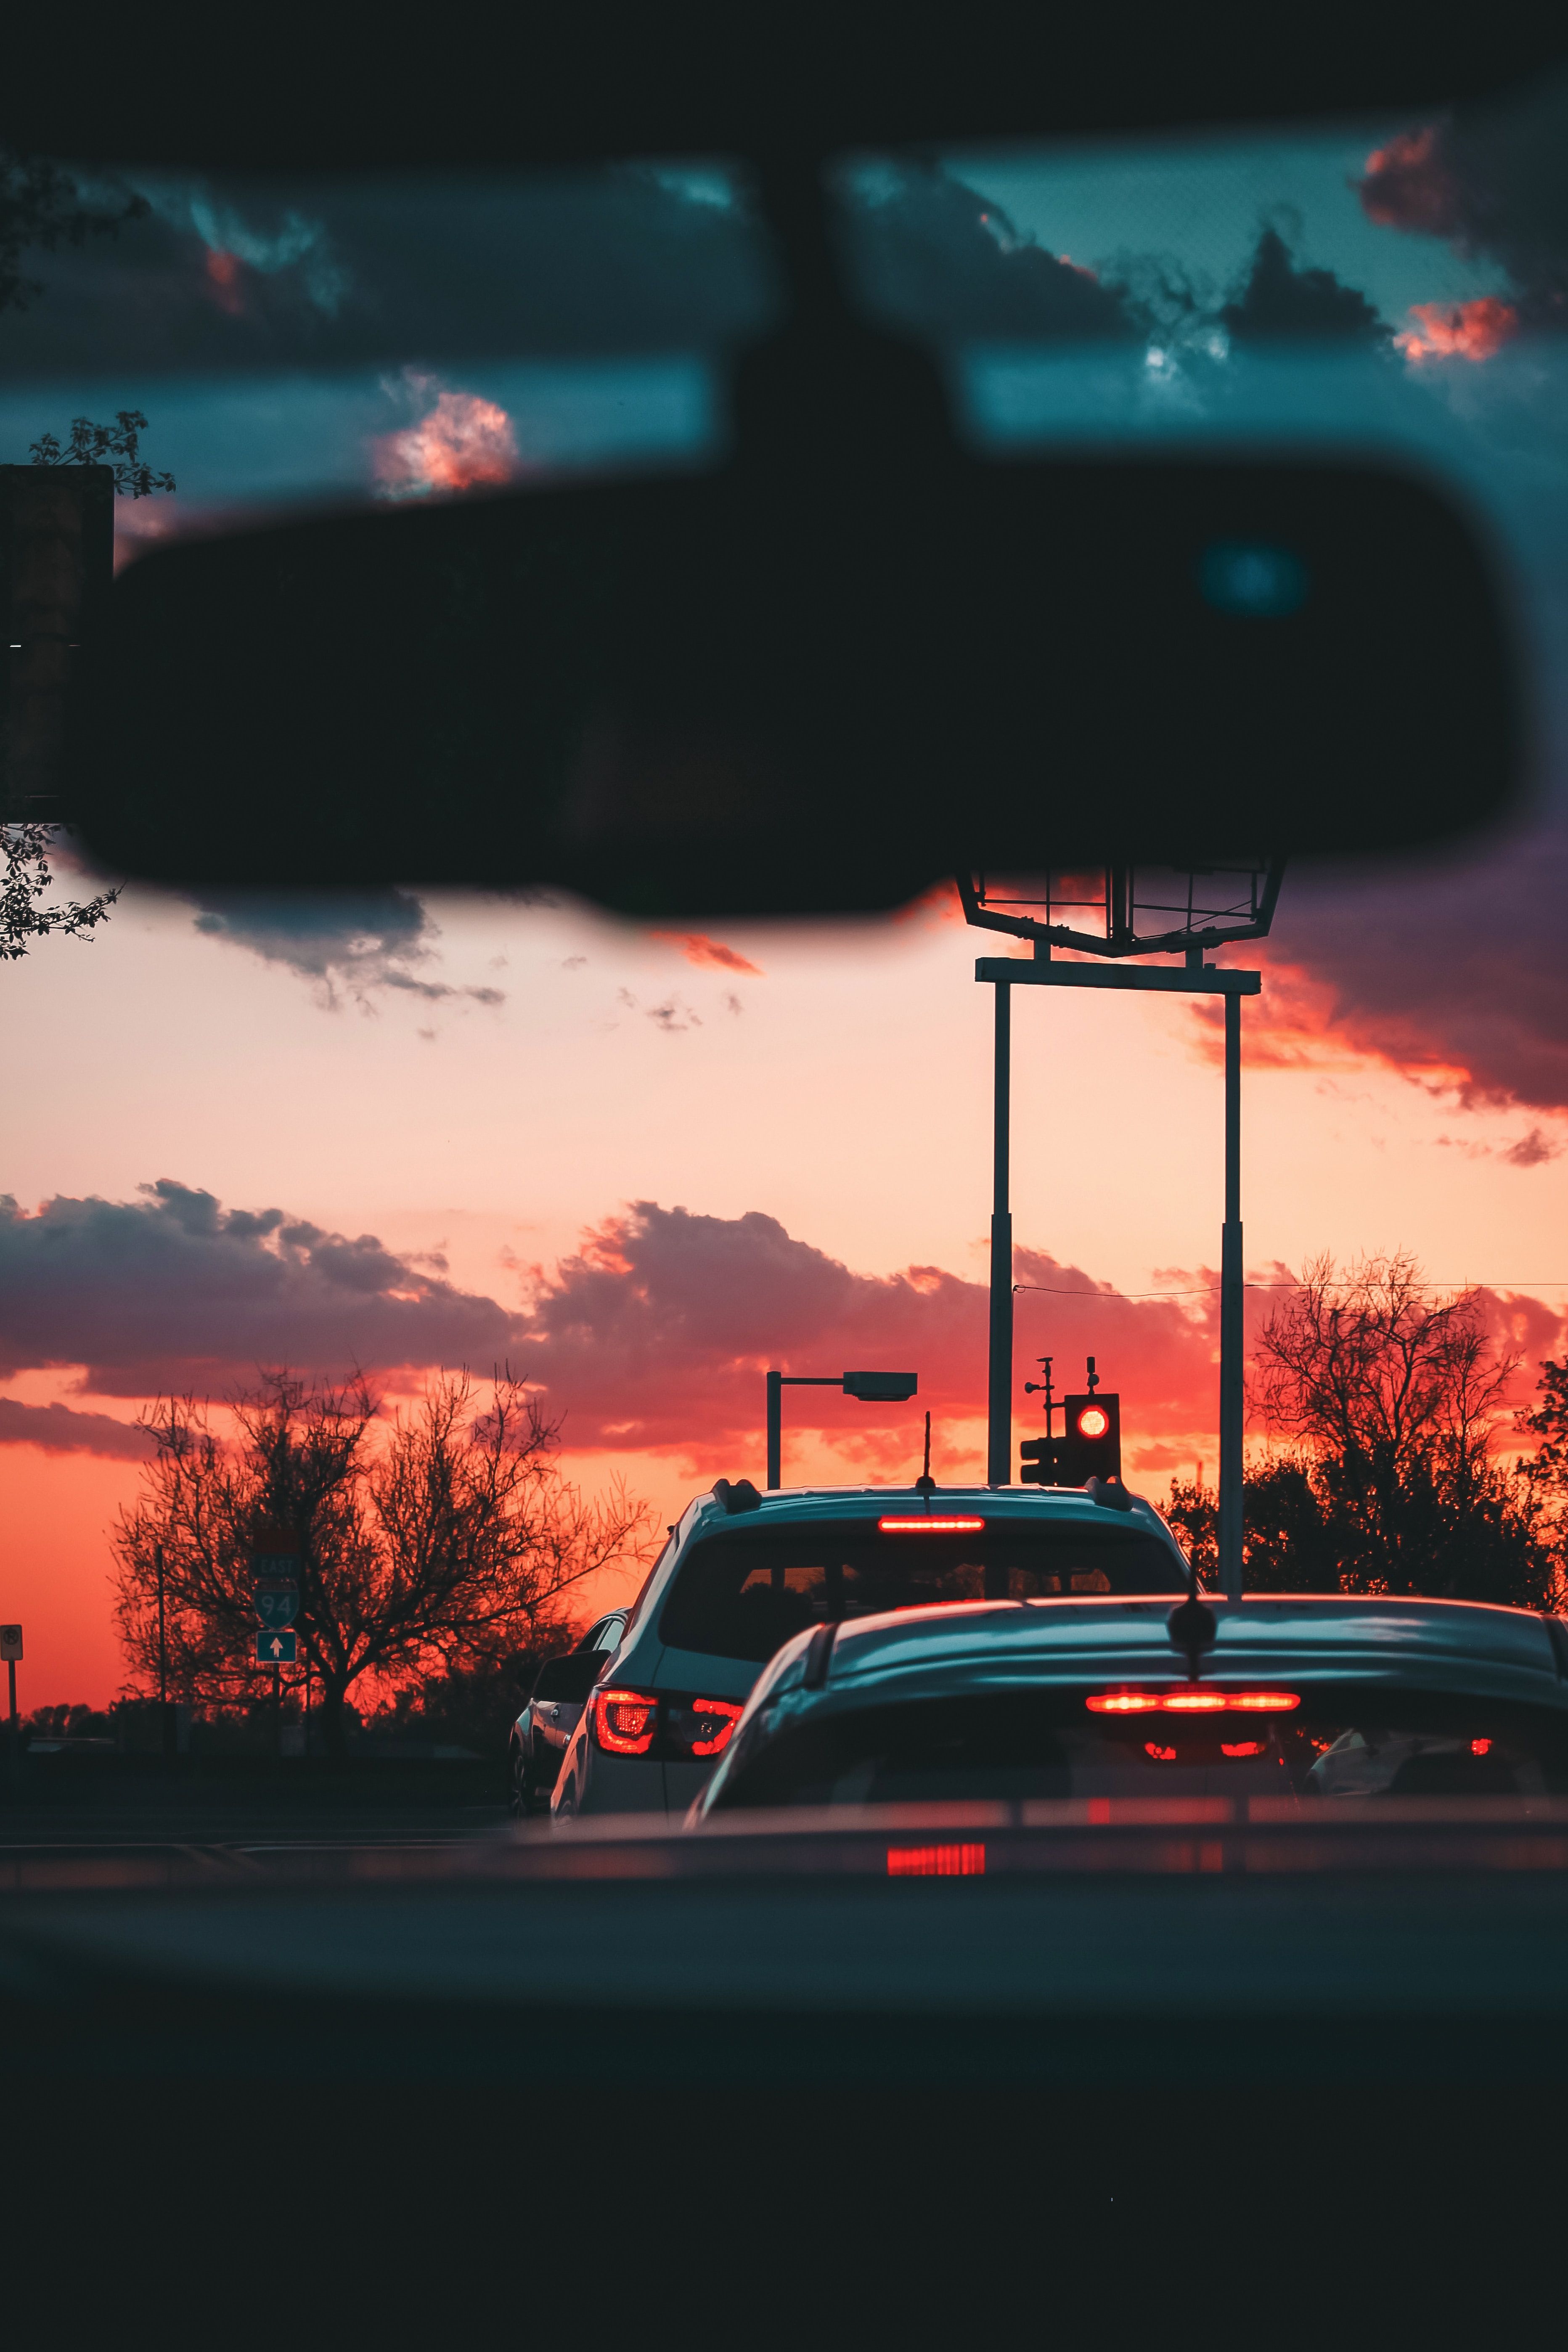  Sonnenaufgang Hintergrundbild 3728x5592. Kostenlose Hintergrundbilder Autos Auf Der Straße Bei Sonnenuntergang, Bilder Für Ihren Desktop Und Fotos